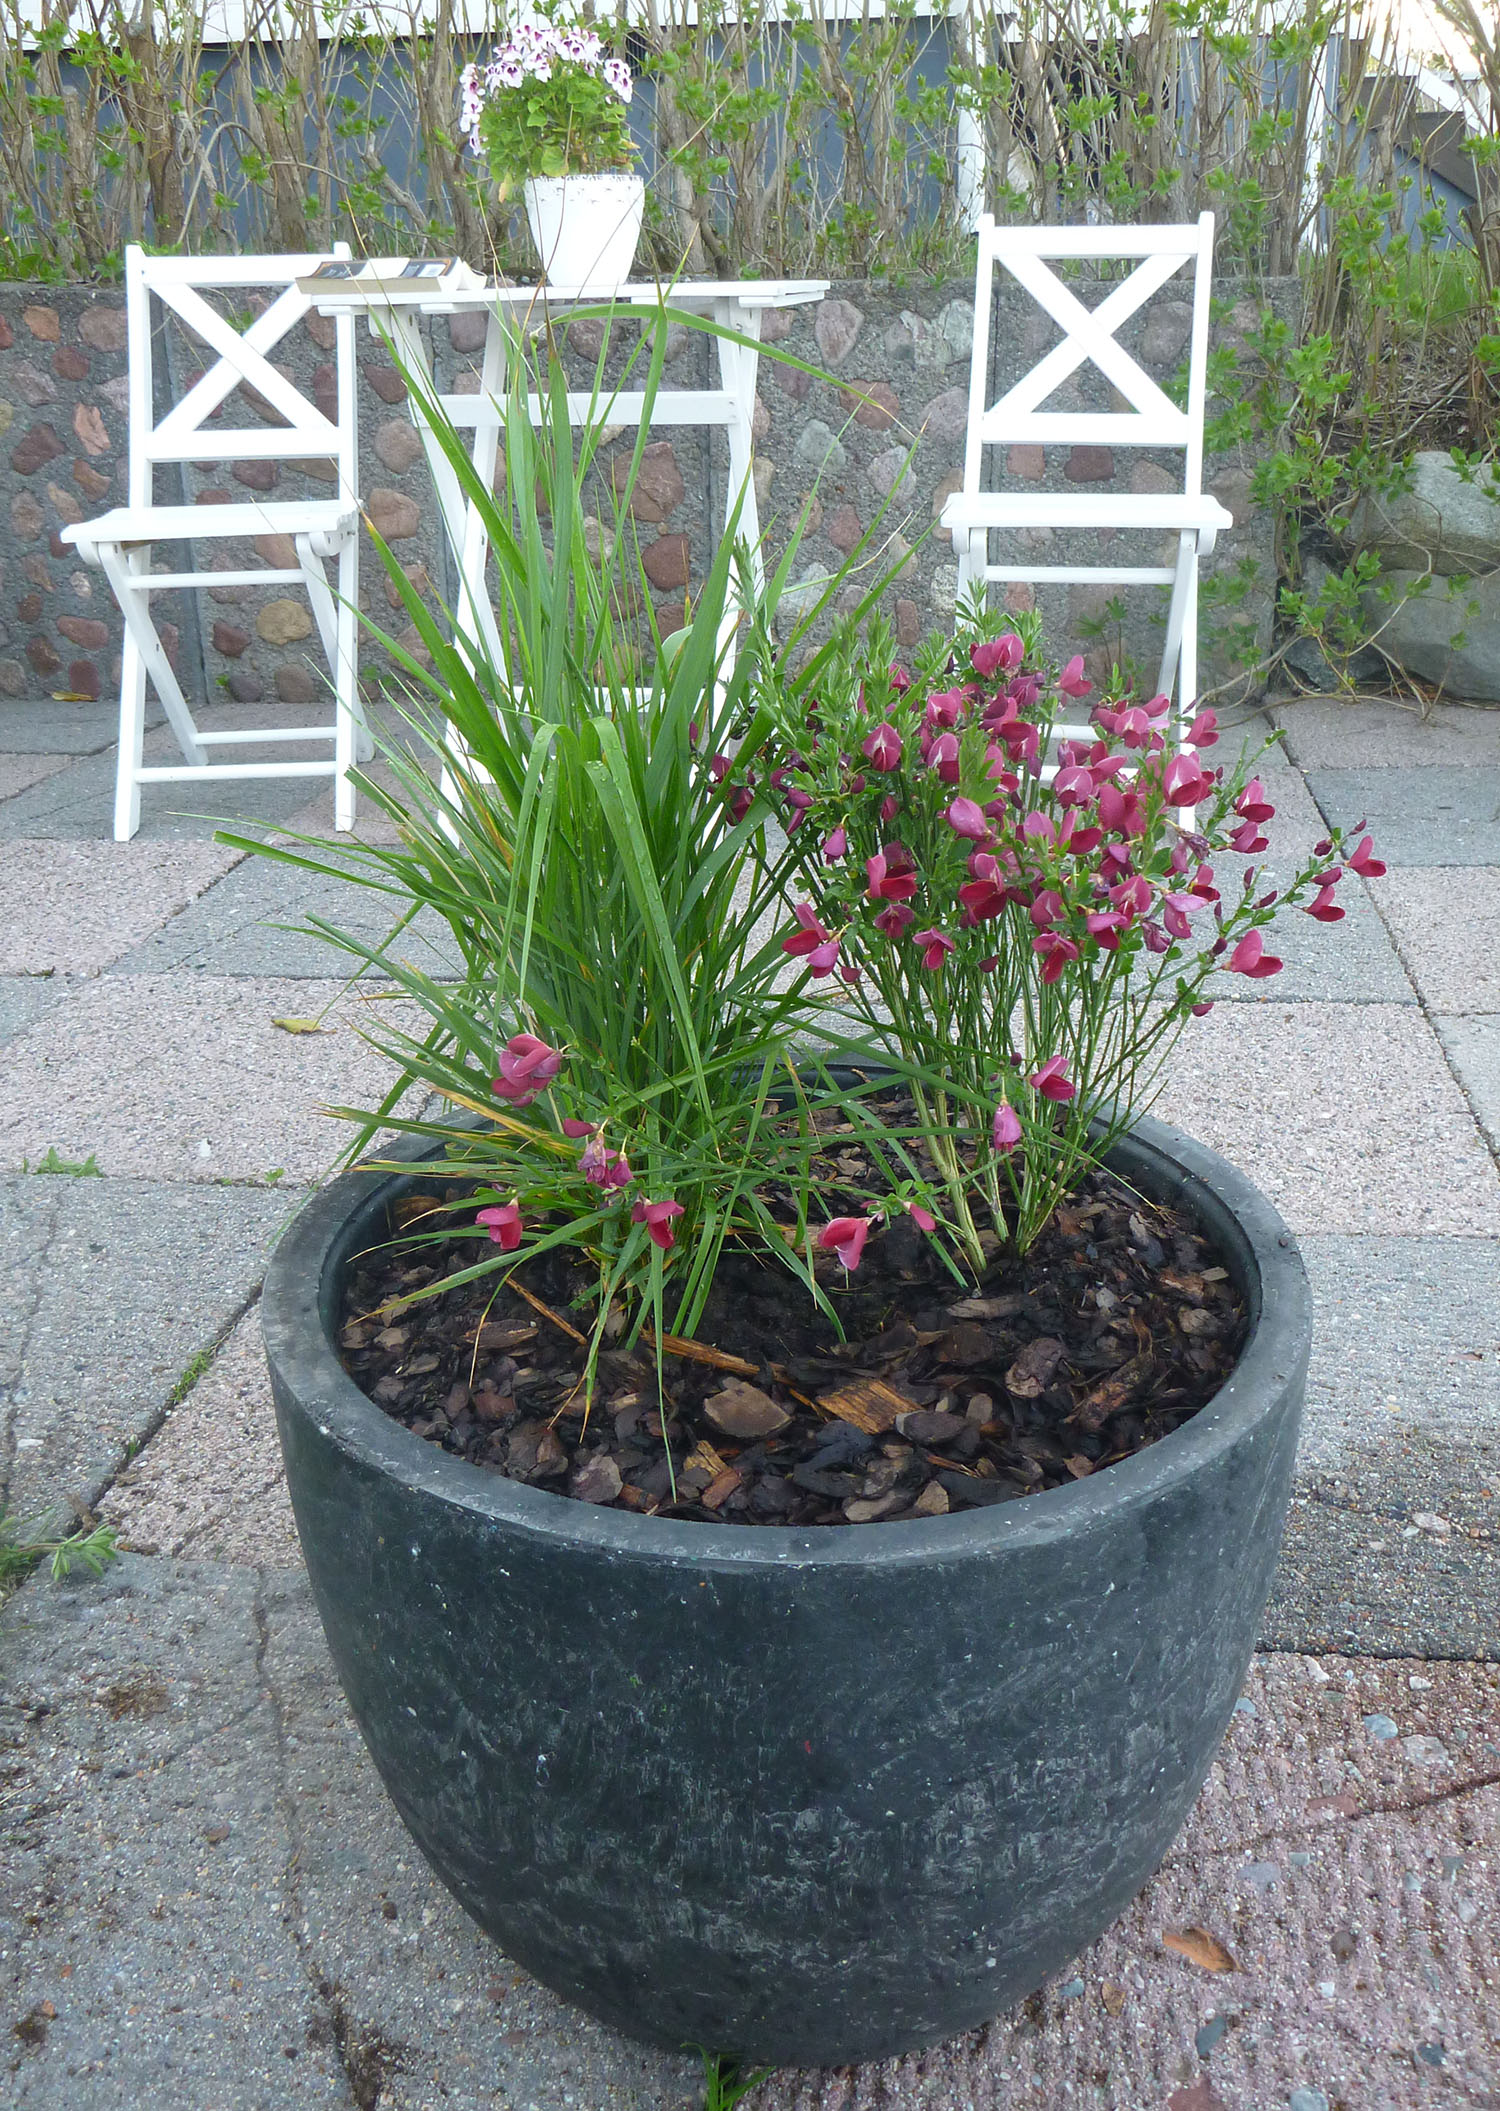 2 NKT recycled flowerpot